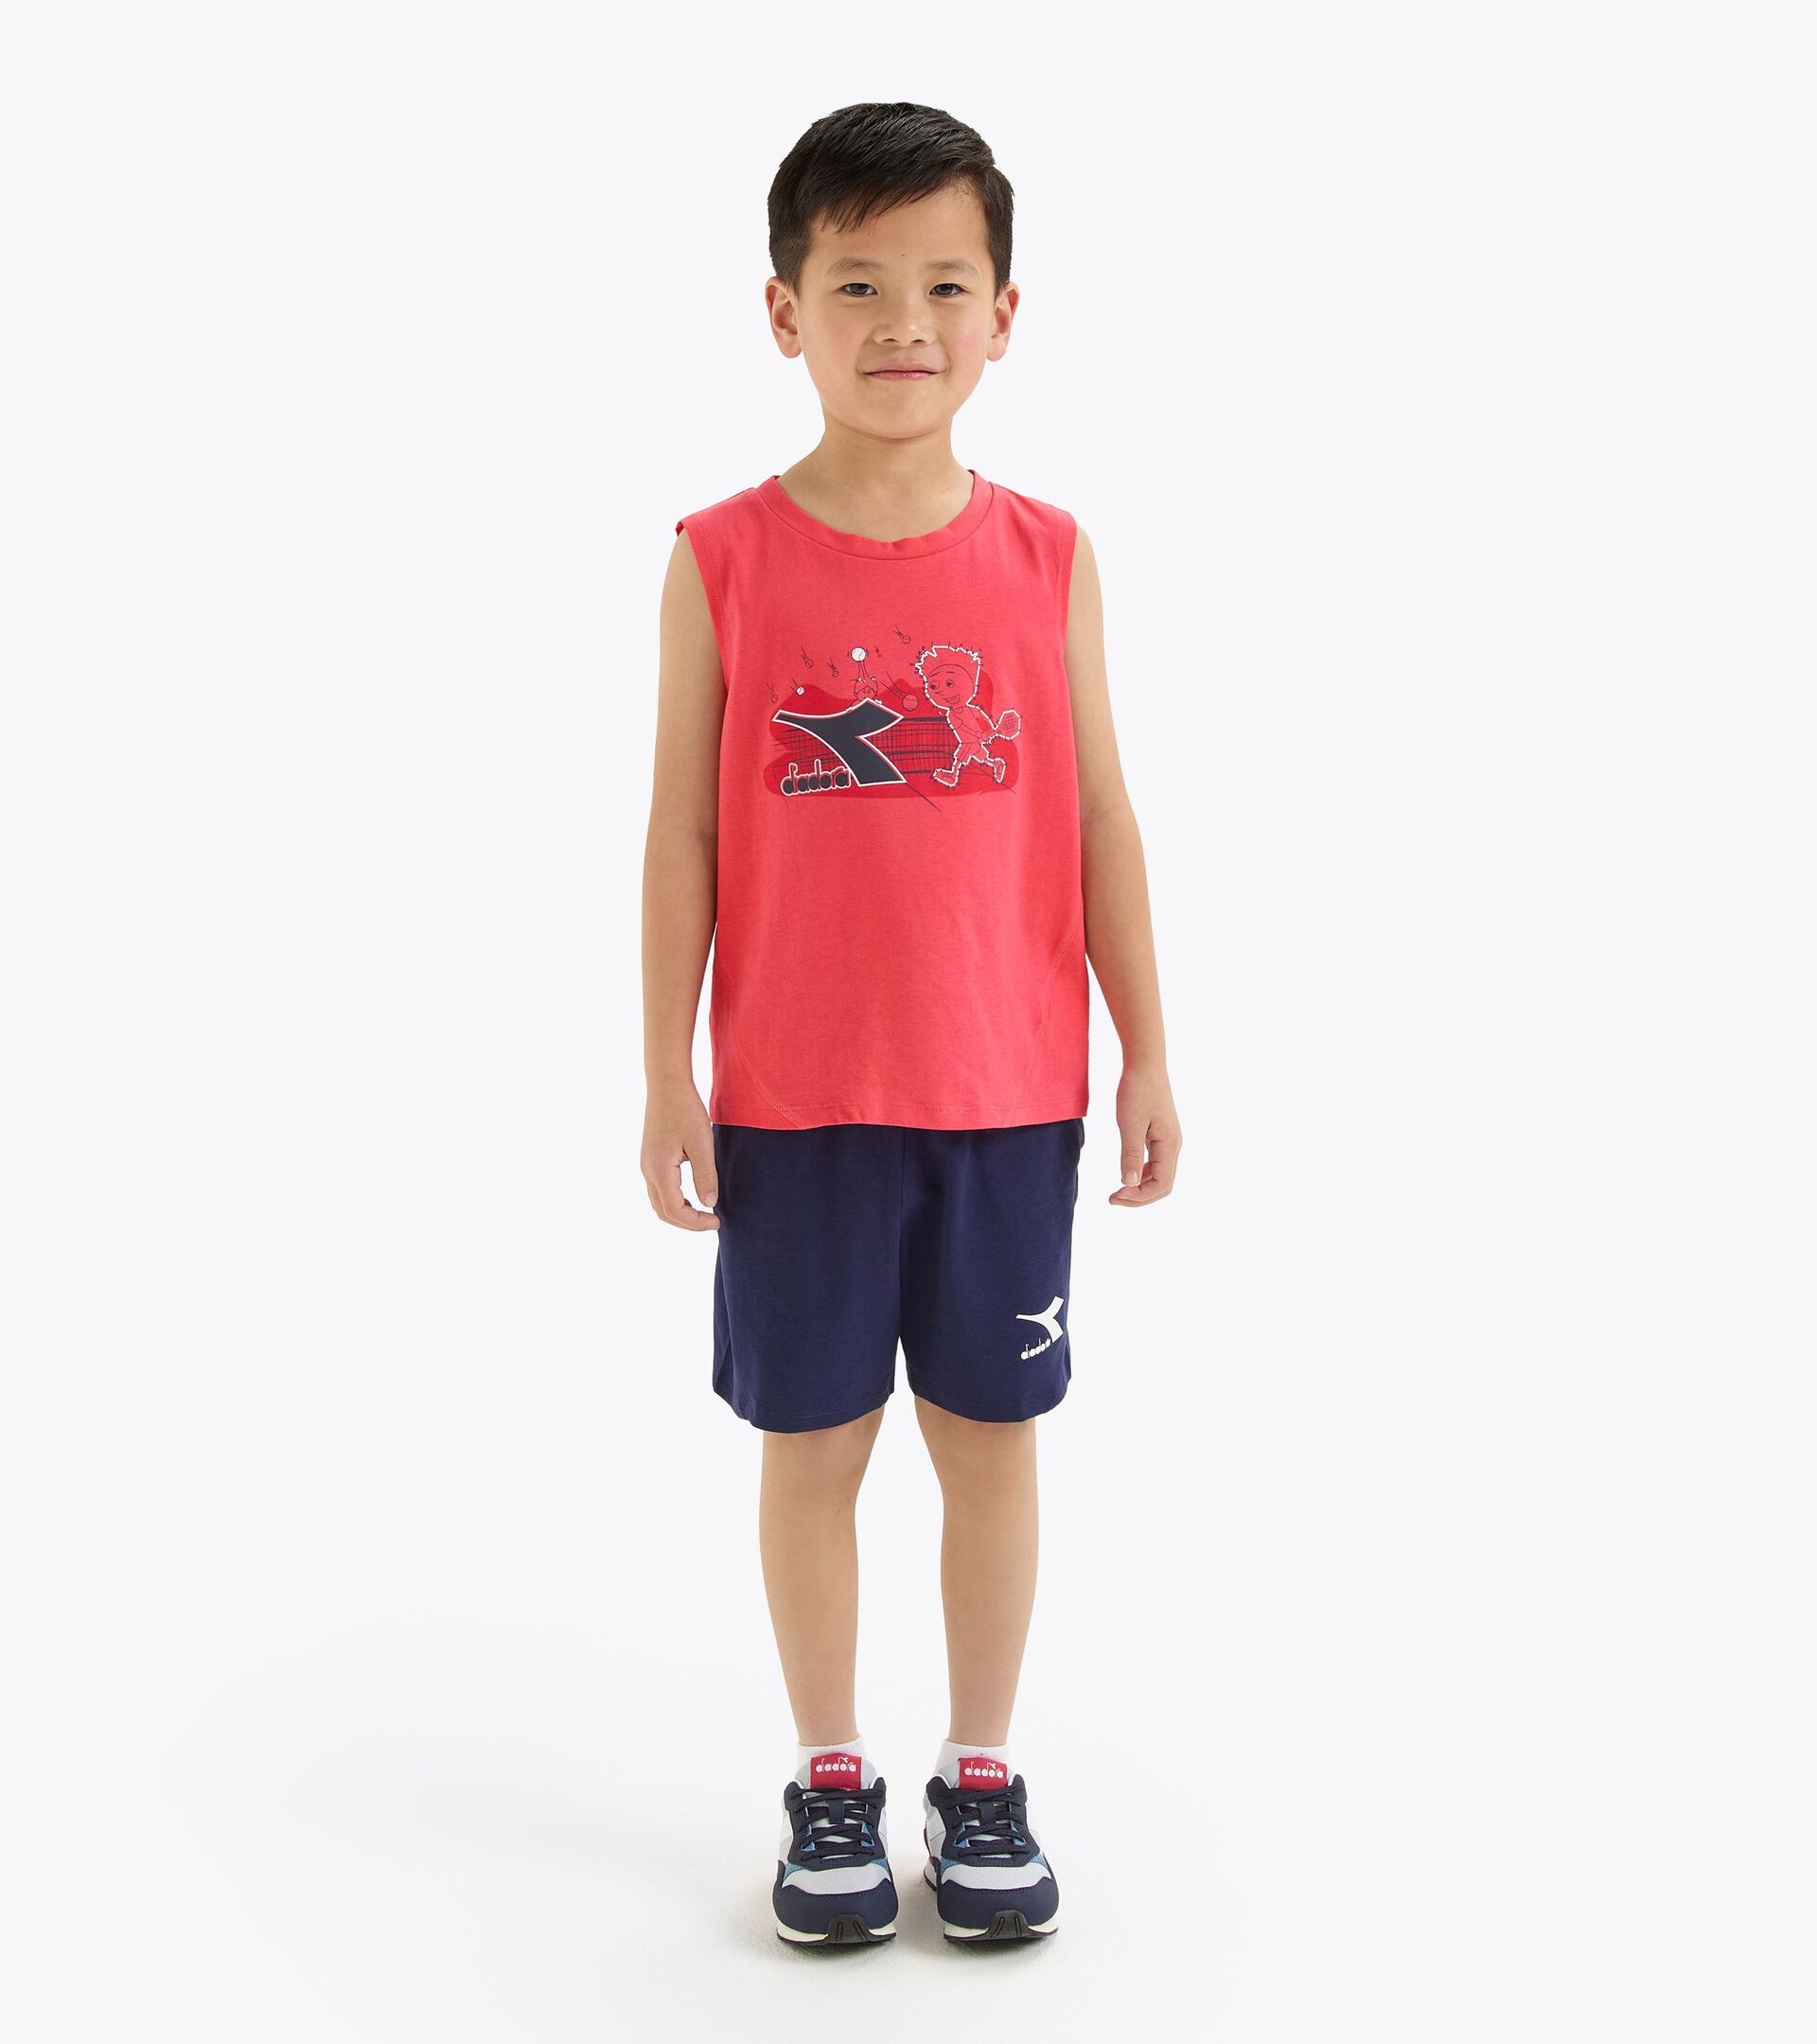 Conjunto deportivo - Camiseta sin mangas y pantalones cortos - Niños y adolescentes JB. SET SL RIDDLE ROJO CAYENA - Diadora